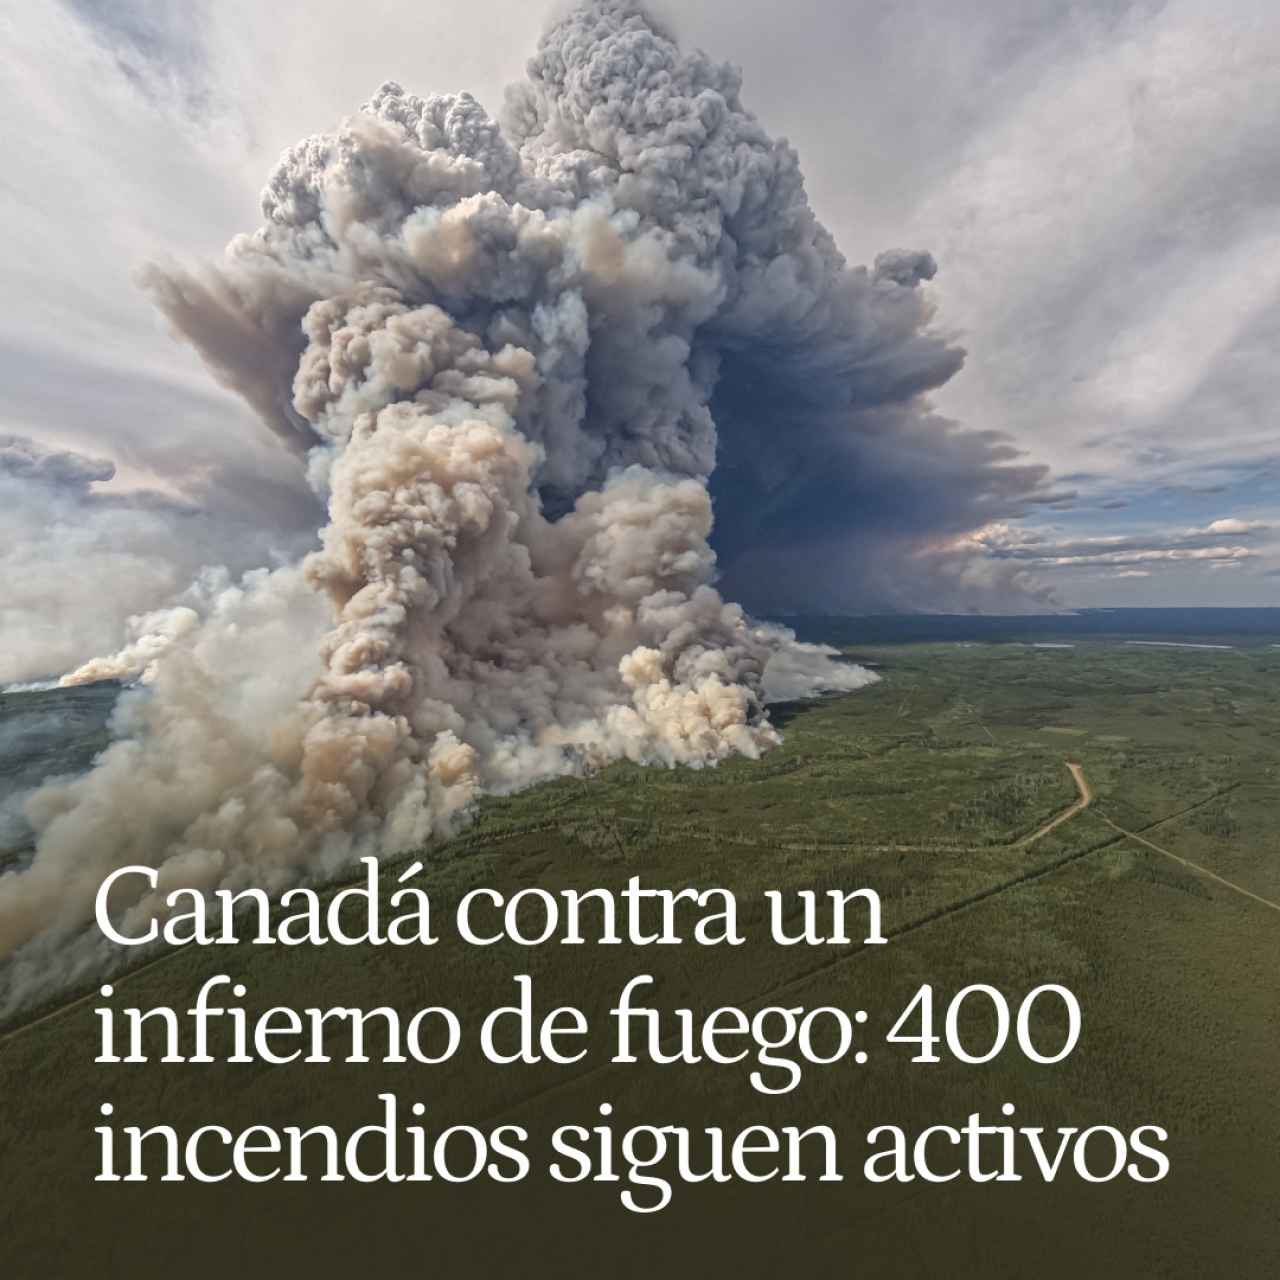 Canadá contra un infierno de fuego: los incendios ya han quemado casi el equivalente a la mitad de Andalucía